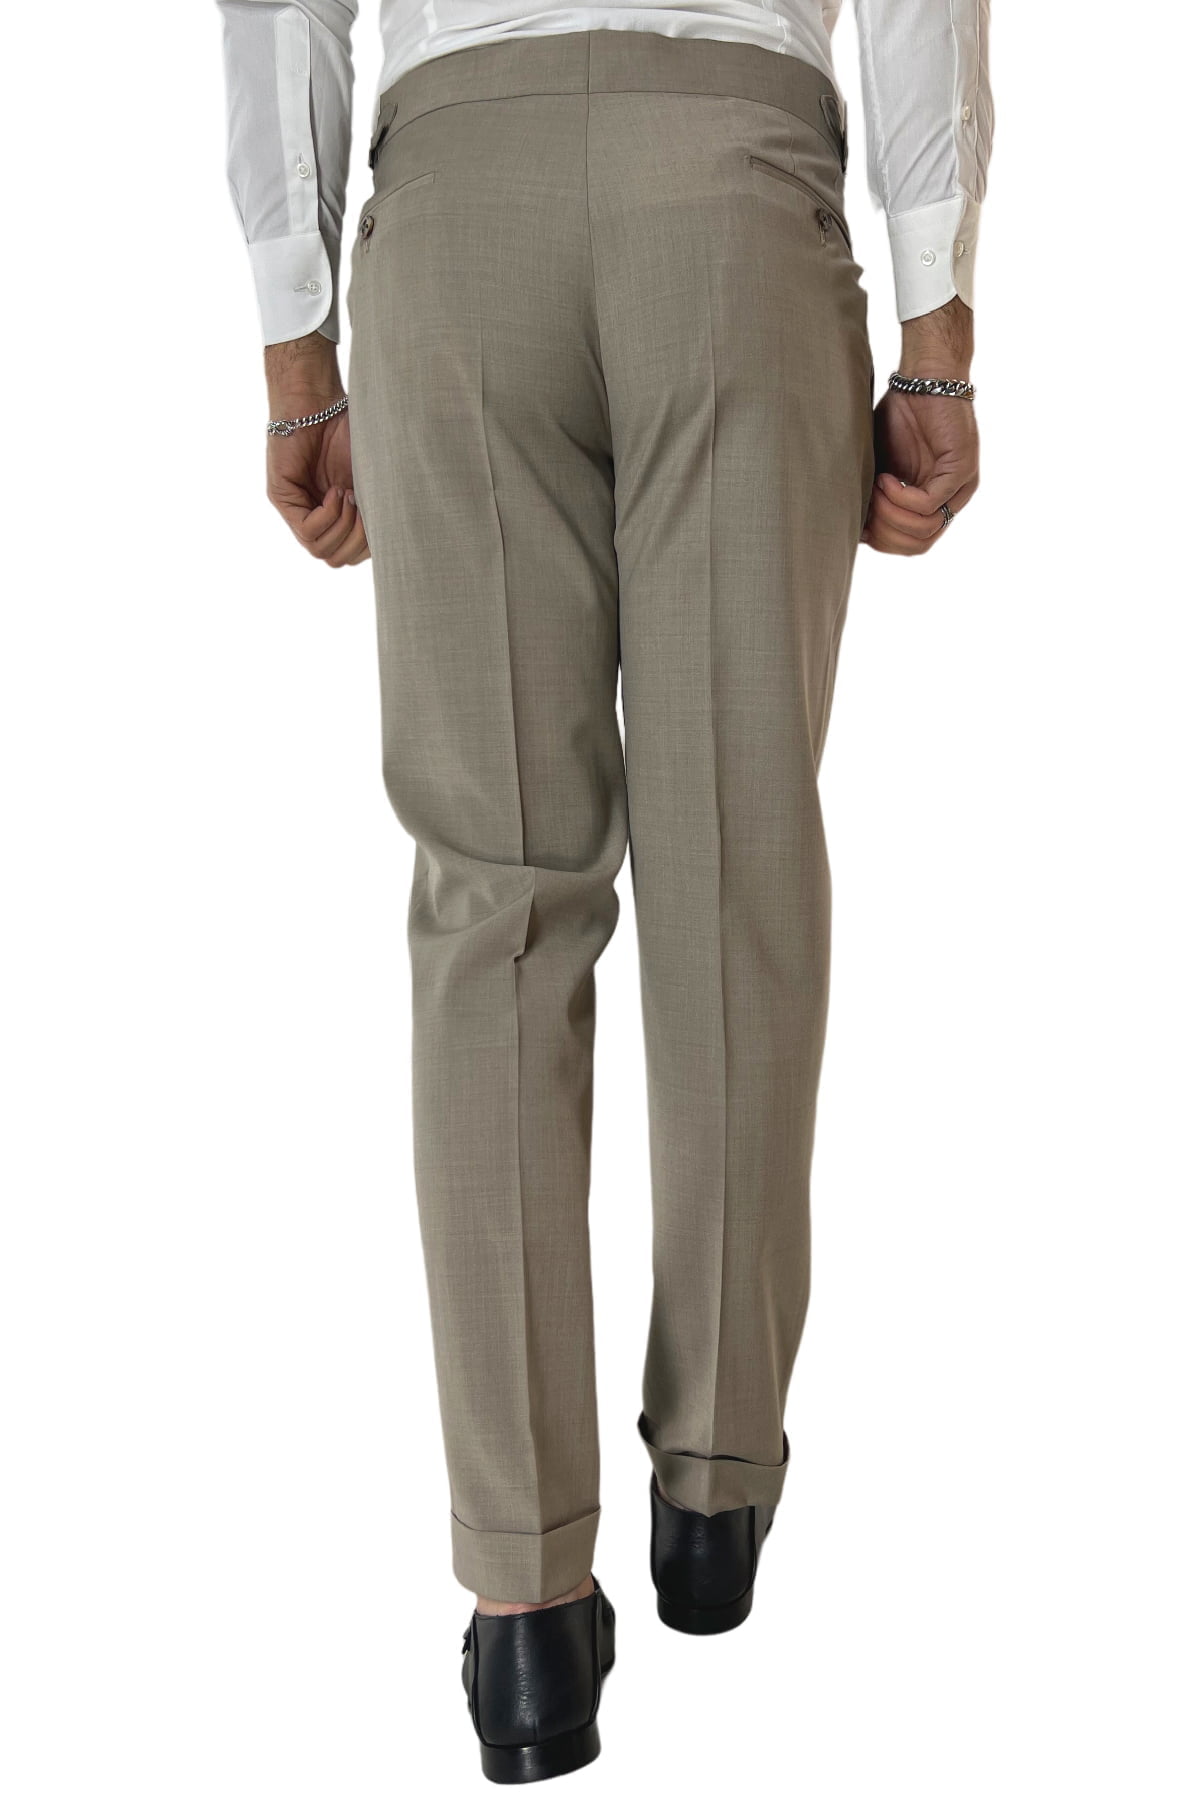 Pantalone uomo Fango in fresco lana tinta unita vita alta con pinces fibbie laterali e risvolto 4cm